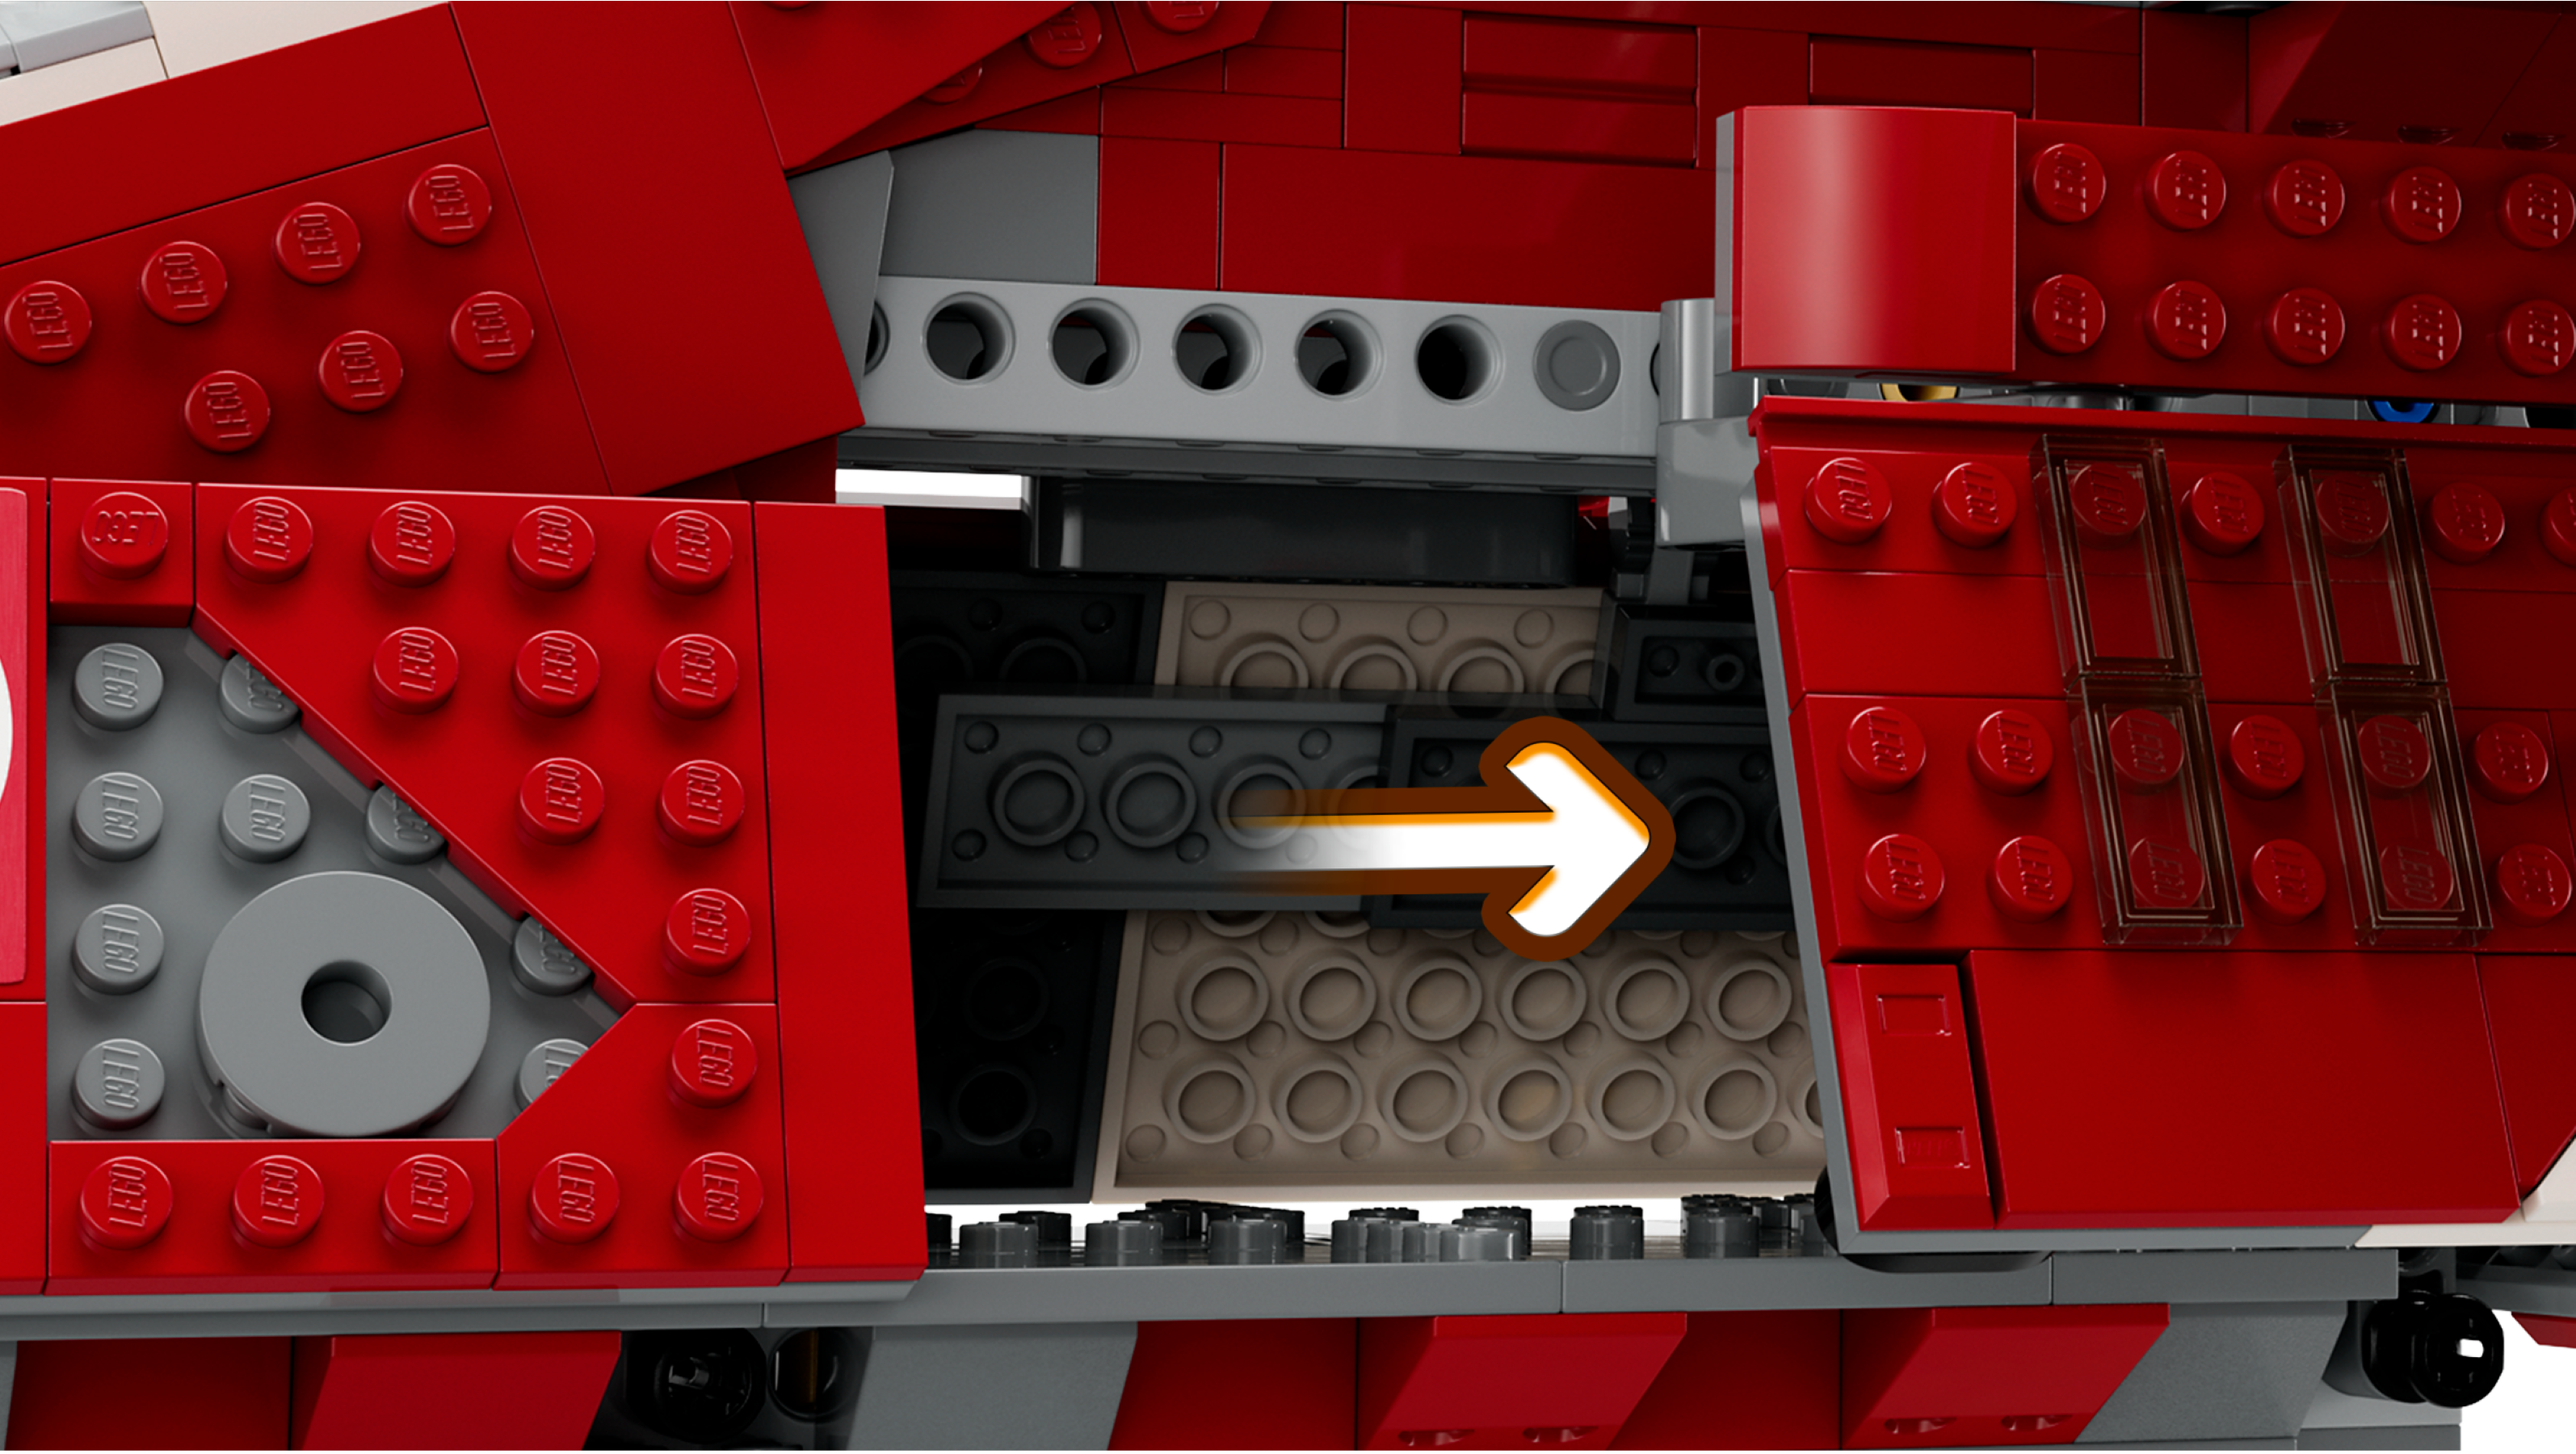 Lego Star Wars: The Clone Wars Coruscant Guard Gunship 75354 : Target